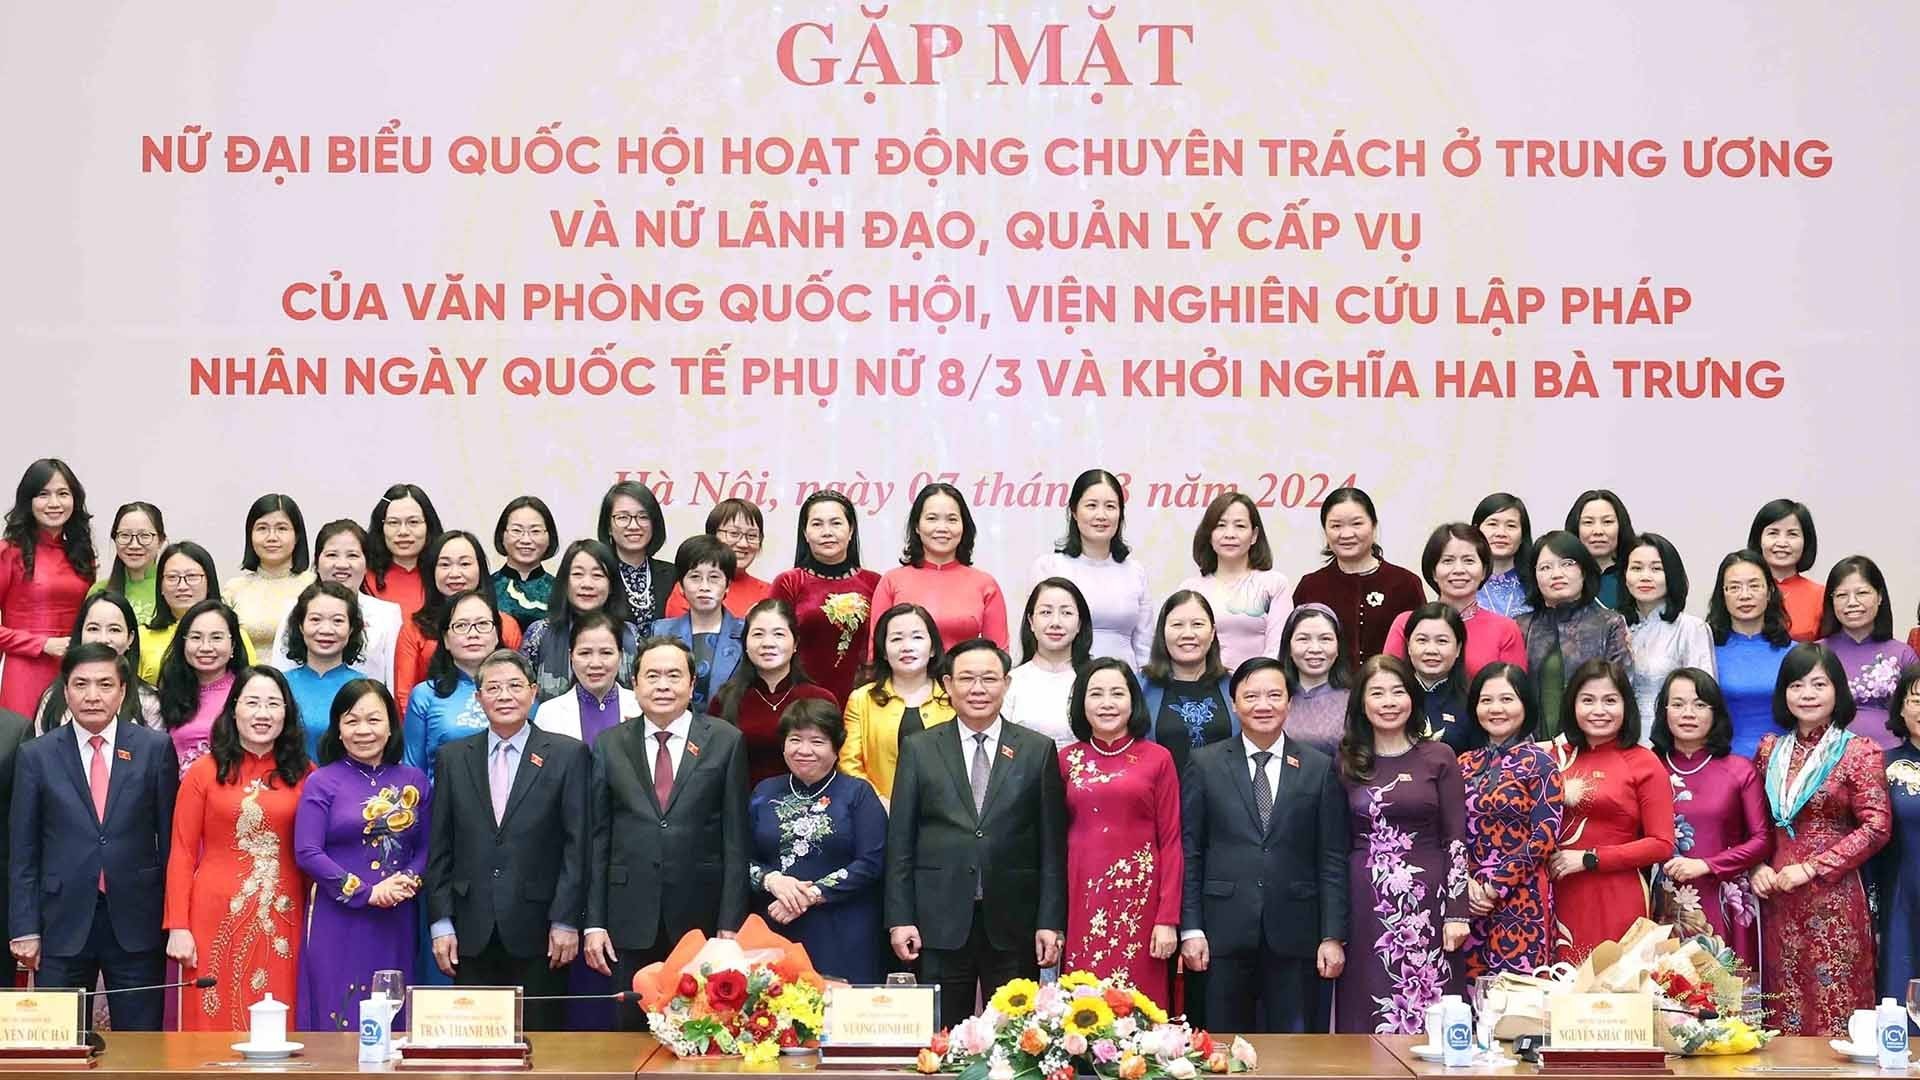 Chủ tịch Quốc hội Vương Đình Huệ gặp mặt các nữ đại biểu Quốc hội chuyên trách ở Trung ương